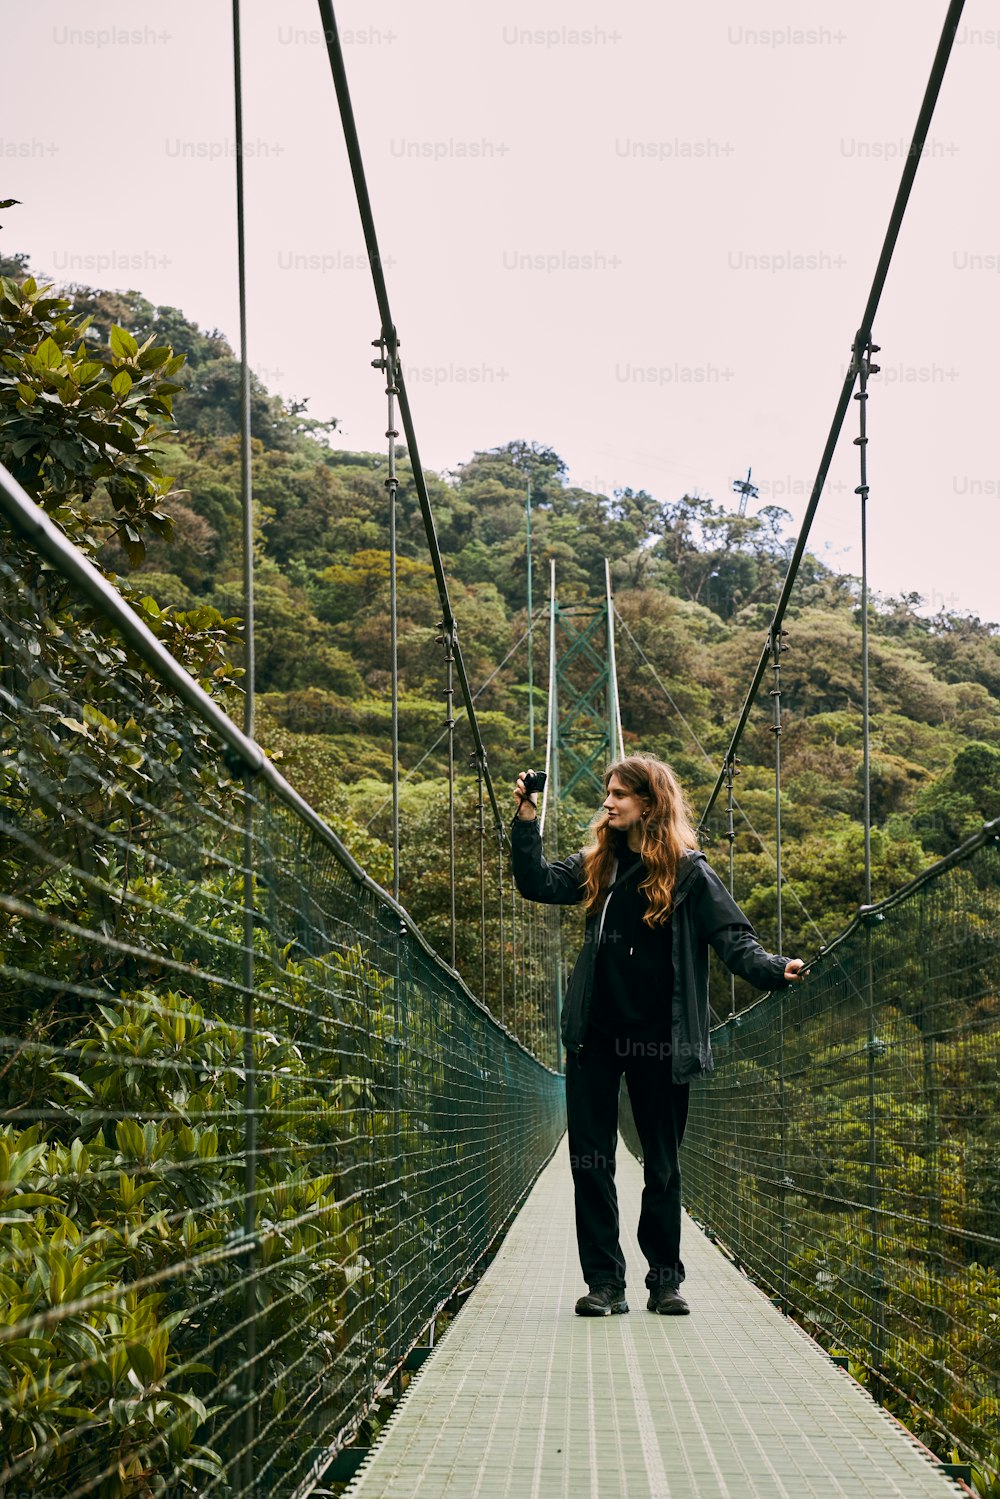 Une femme traverse un pont suspendu